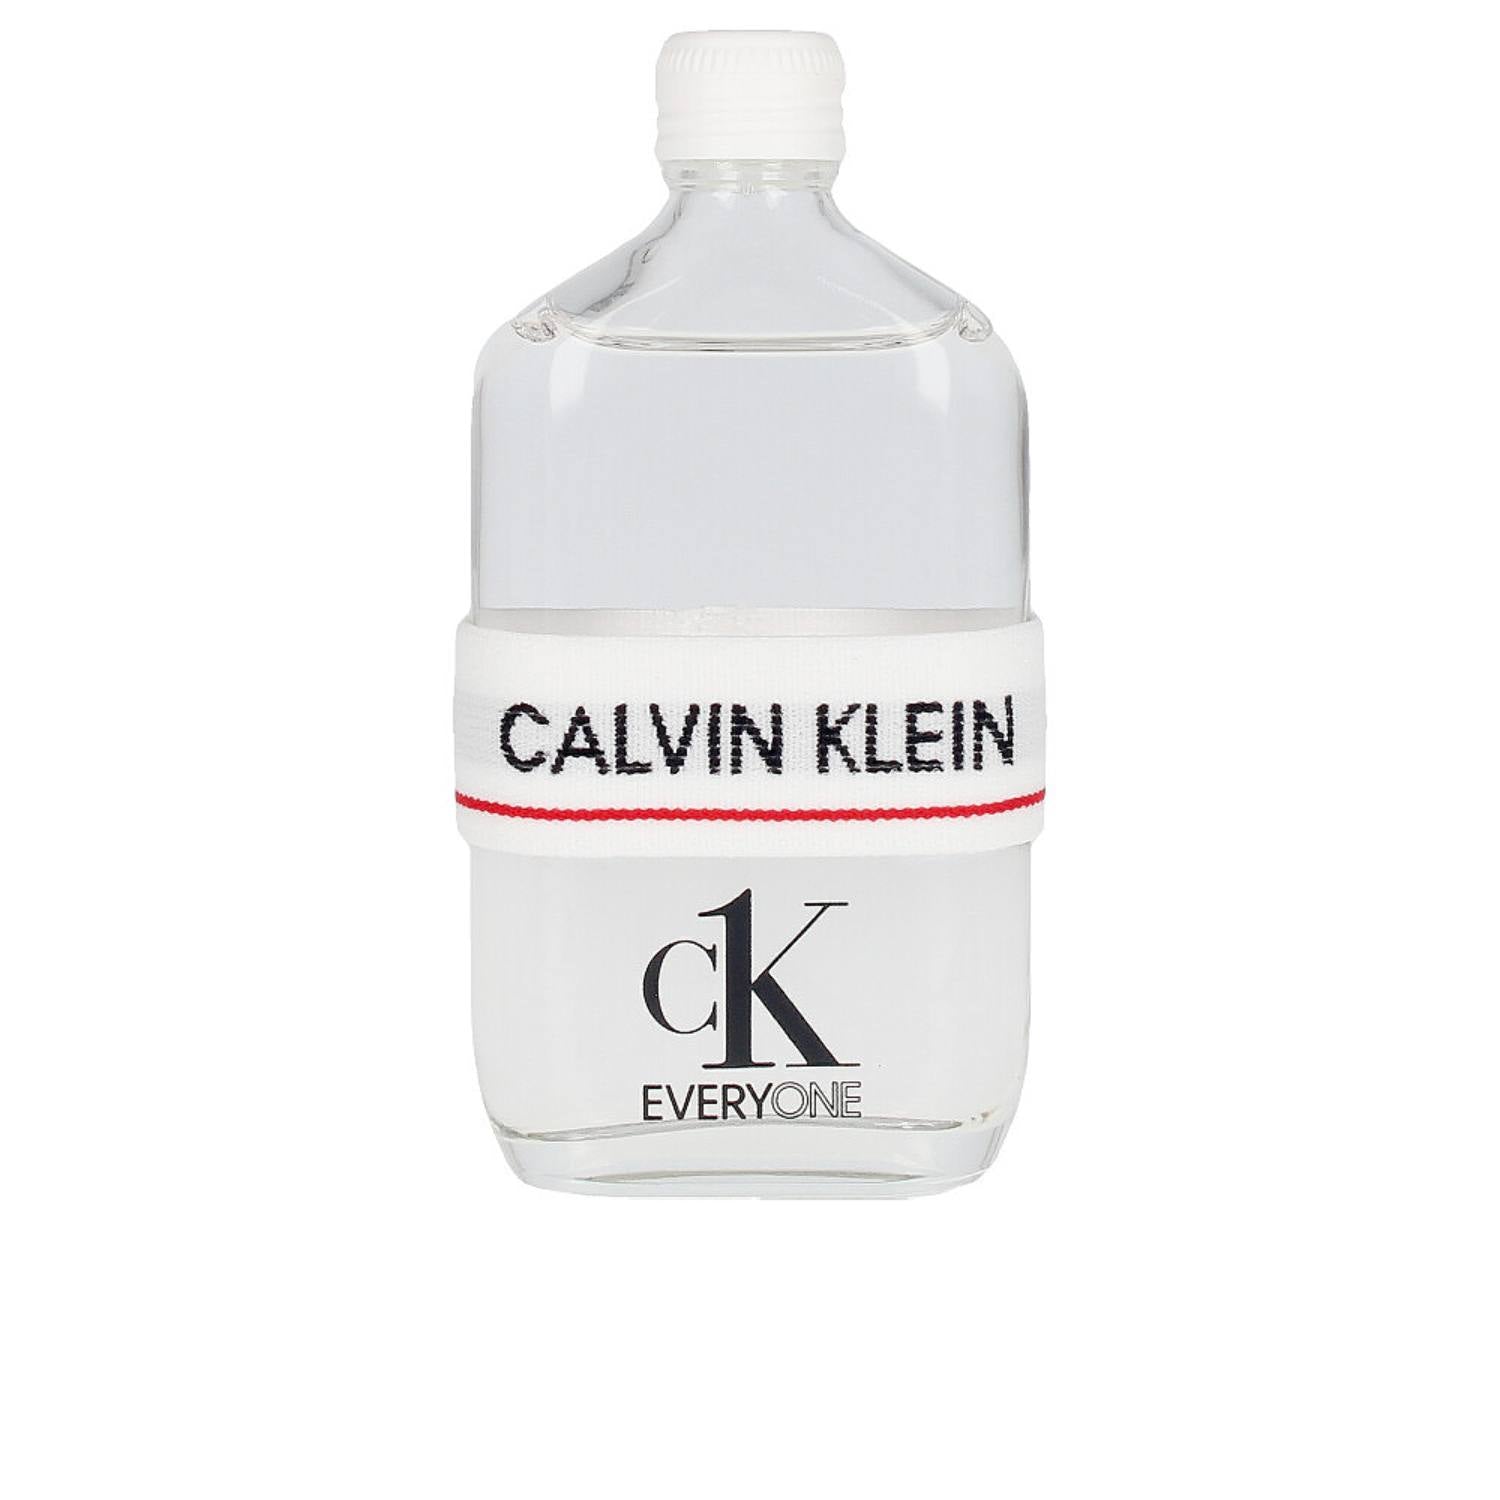 CALVIN KLEIN  CK EVERYONE eau de Toilette Spray